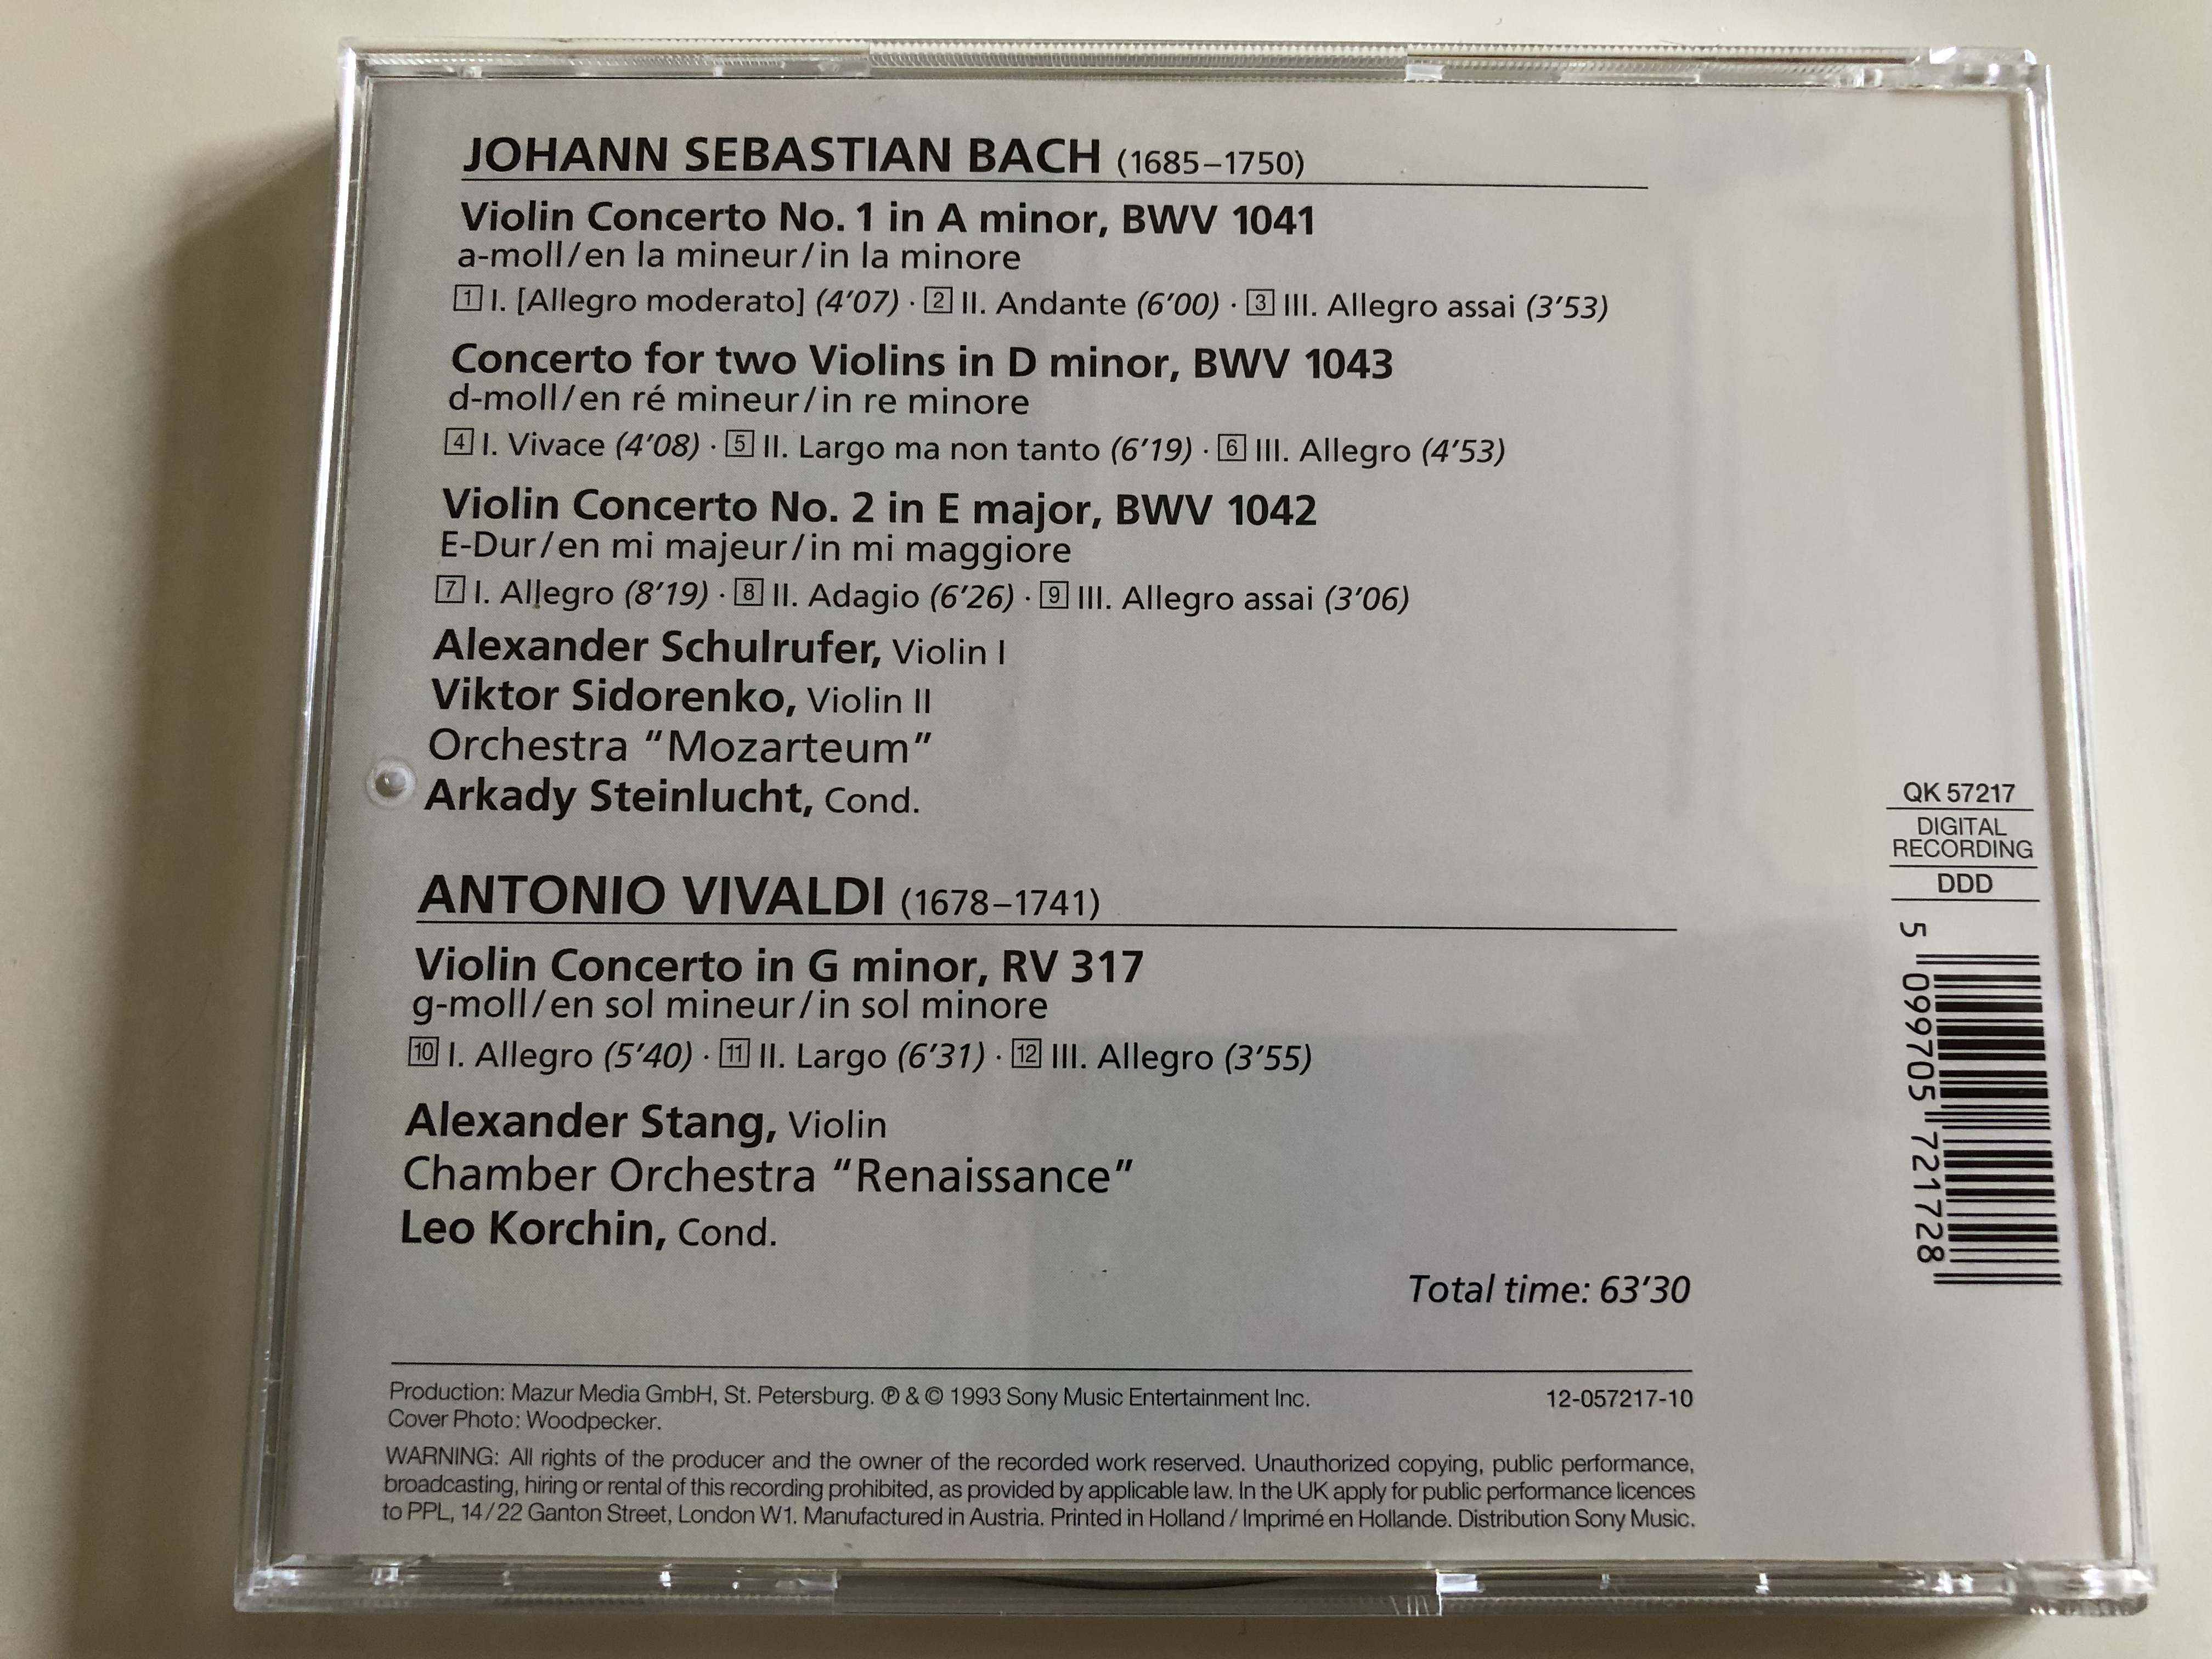 bach-violinkonzerte-nr.-1-nr.-2-konzert-f-r-zwei-violinen-vivaldi-violinkonzert-orchestra-mozarteum-alexander-schulrufer-viktor-sidorenko-violine-qk-57217-audio-cd-1993-5-.jpg